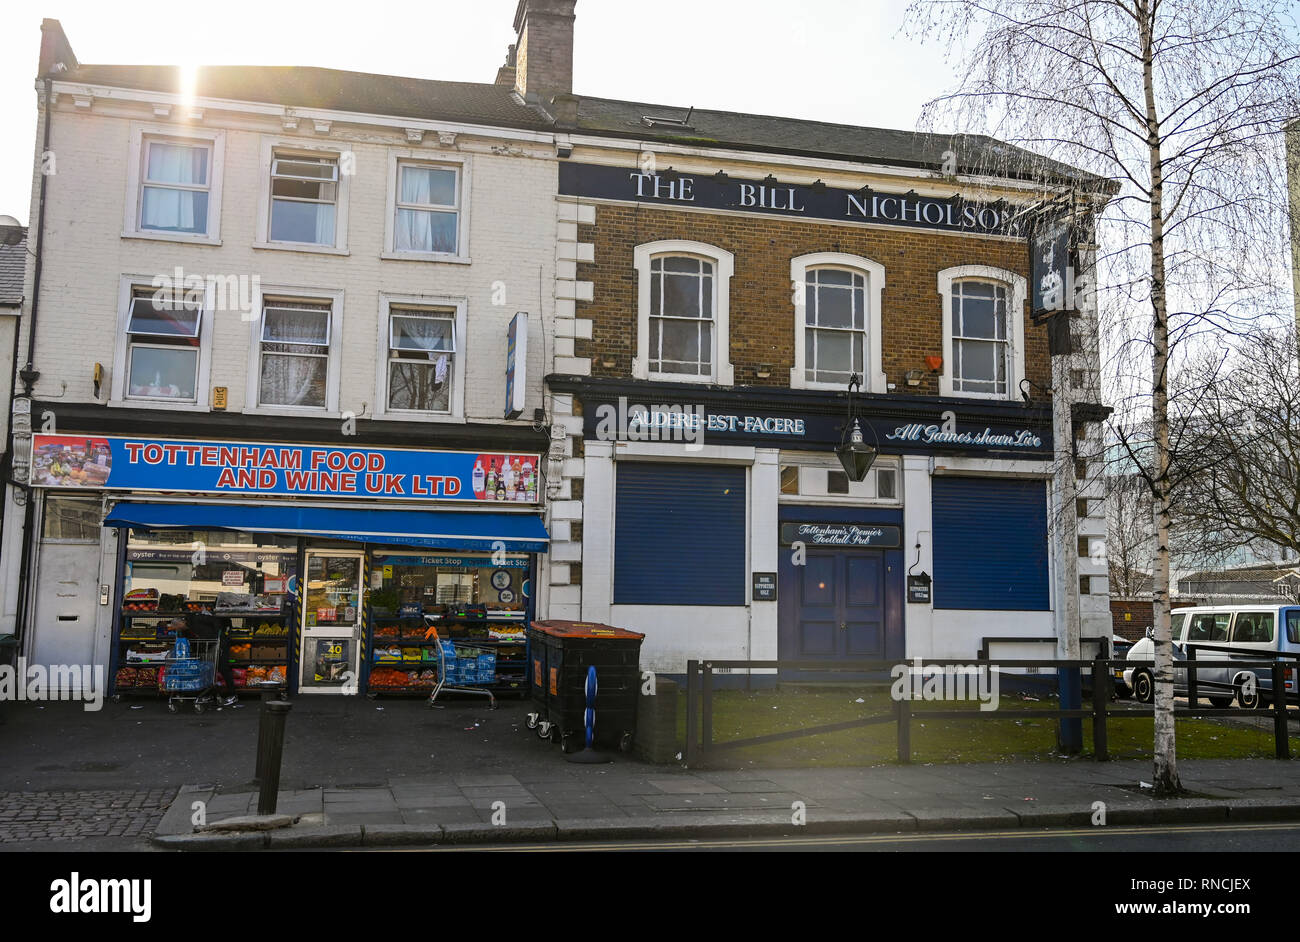 Tottenham, Londres, Reino Unido - El famoso Bill Nicholson pub para impulsa a los aficionados al fútbol con la tienda de al lado Foto de stock